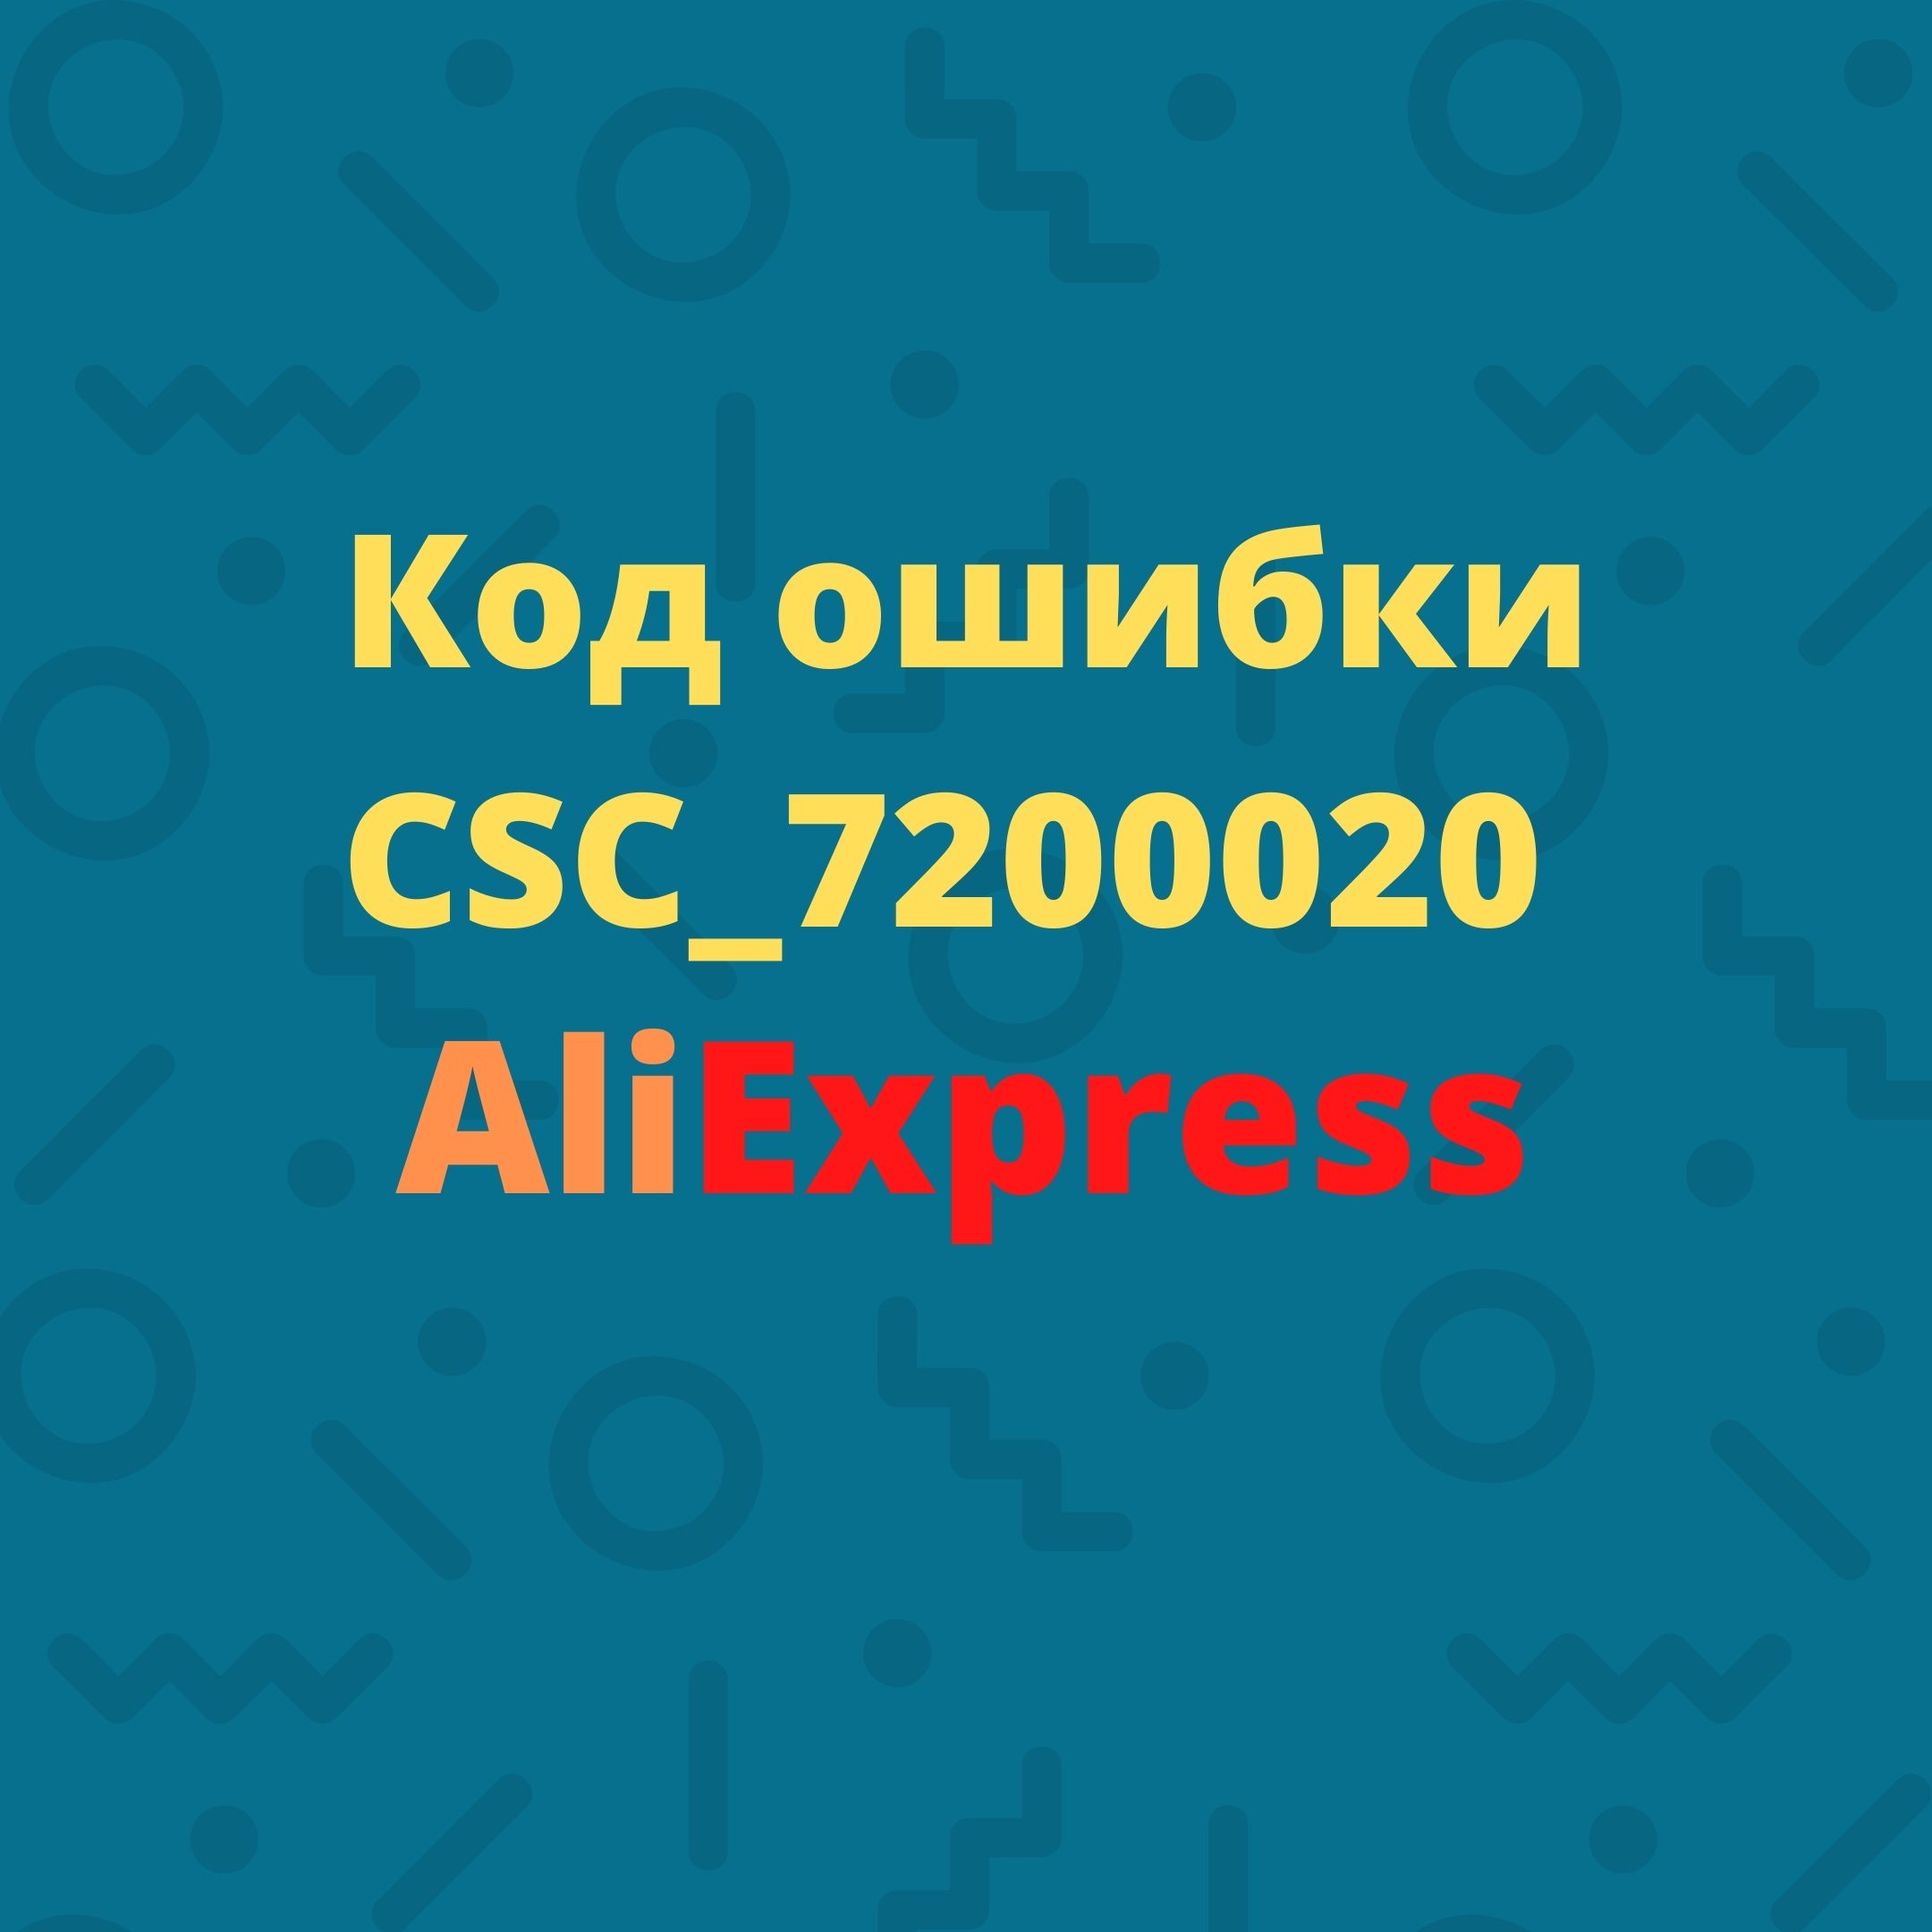 Csc 7200001 Код Ошибки Алиэкспресс